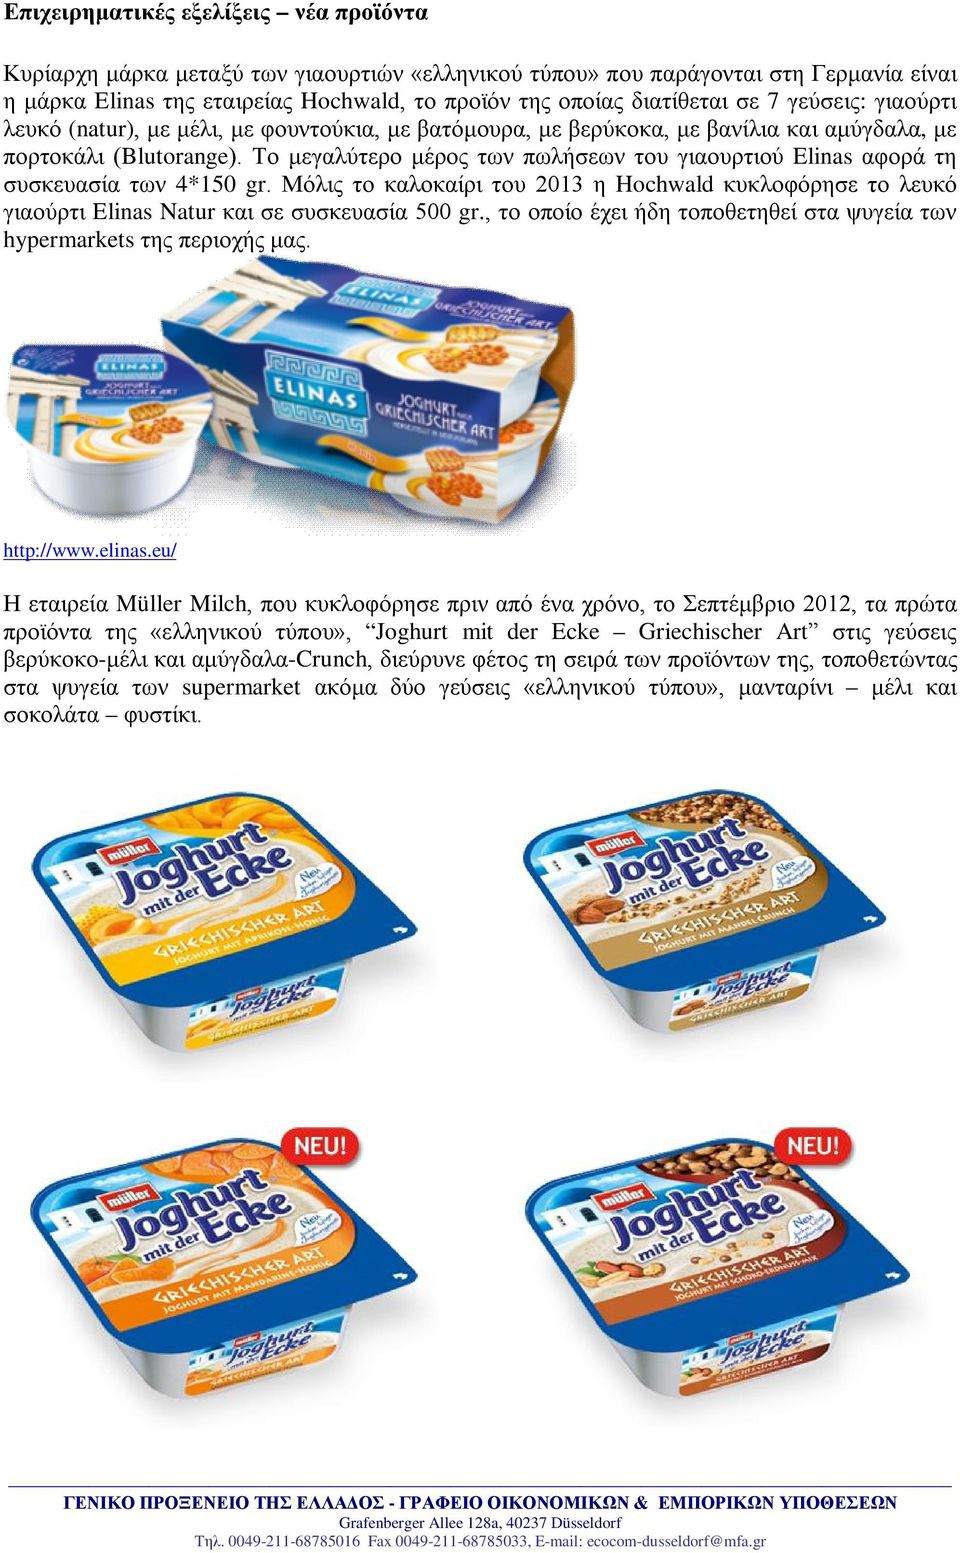 Το μεγαλύτερο μέρος των πωλήσεων του γιαουρτιού Elinas αφορά τη συσκευασία των 4*150 gr. Μόλις το καλοκαίρι του 2013 η Hochwald κυκλοφόρησε το λευκό γιαούρτι Elinas Natur και σε συσκευασία 500 gr.